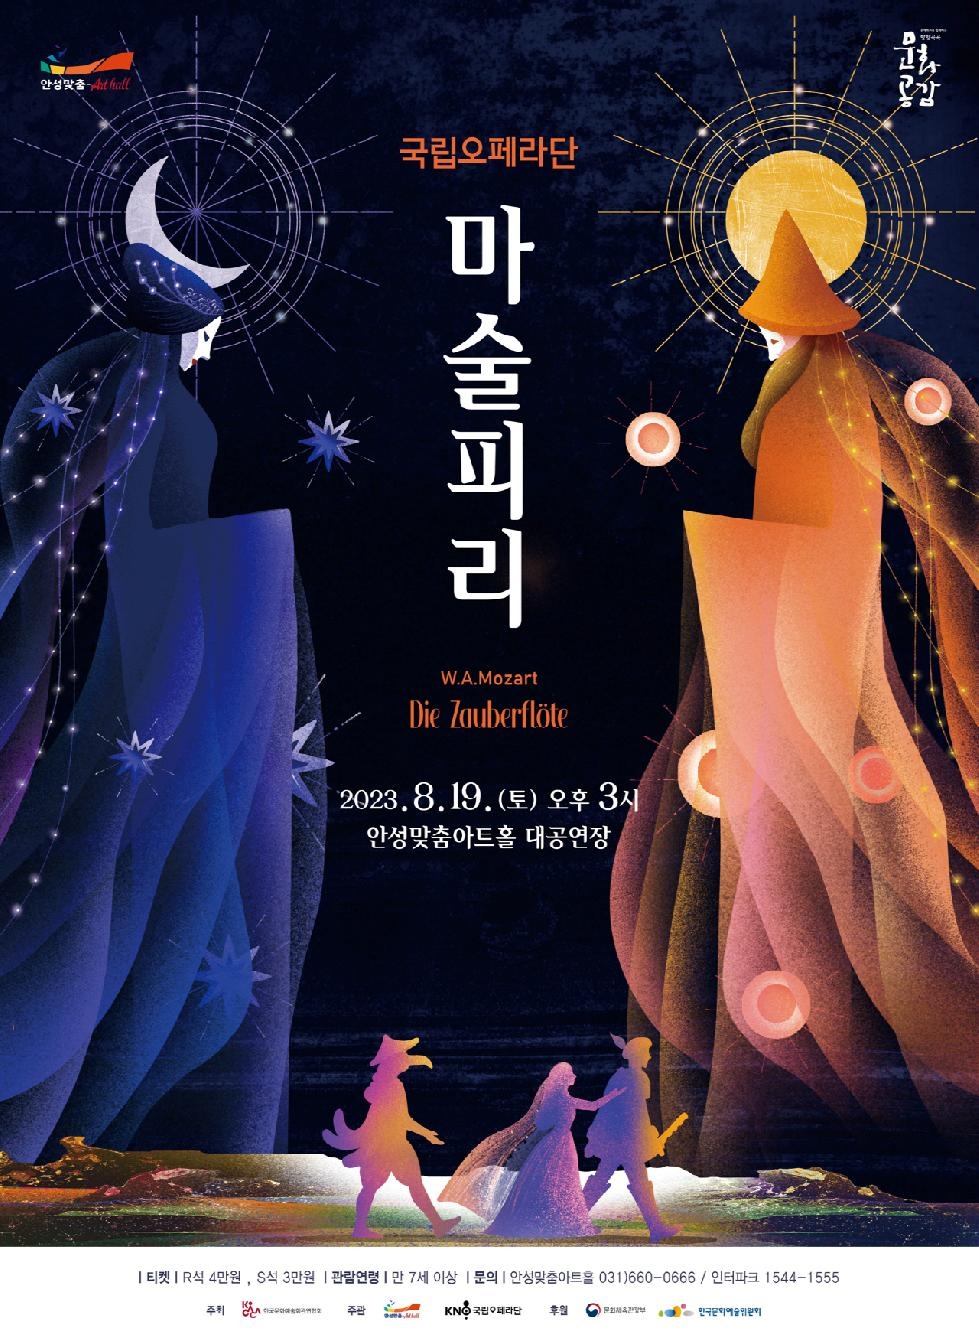 안성맞춤아트홀, 국립오페라단이 선보이는 [마술피리] 공연 개최